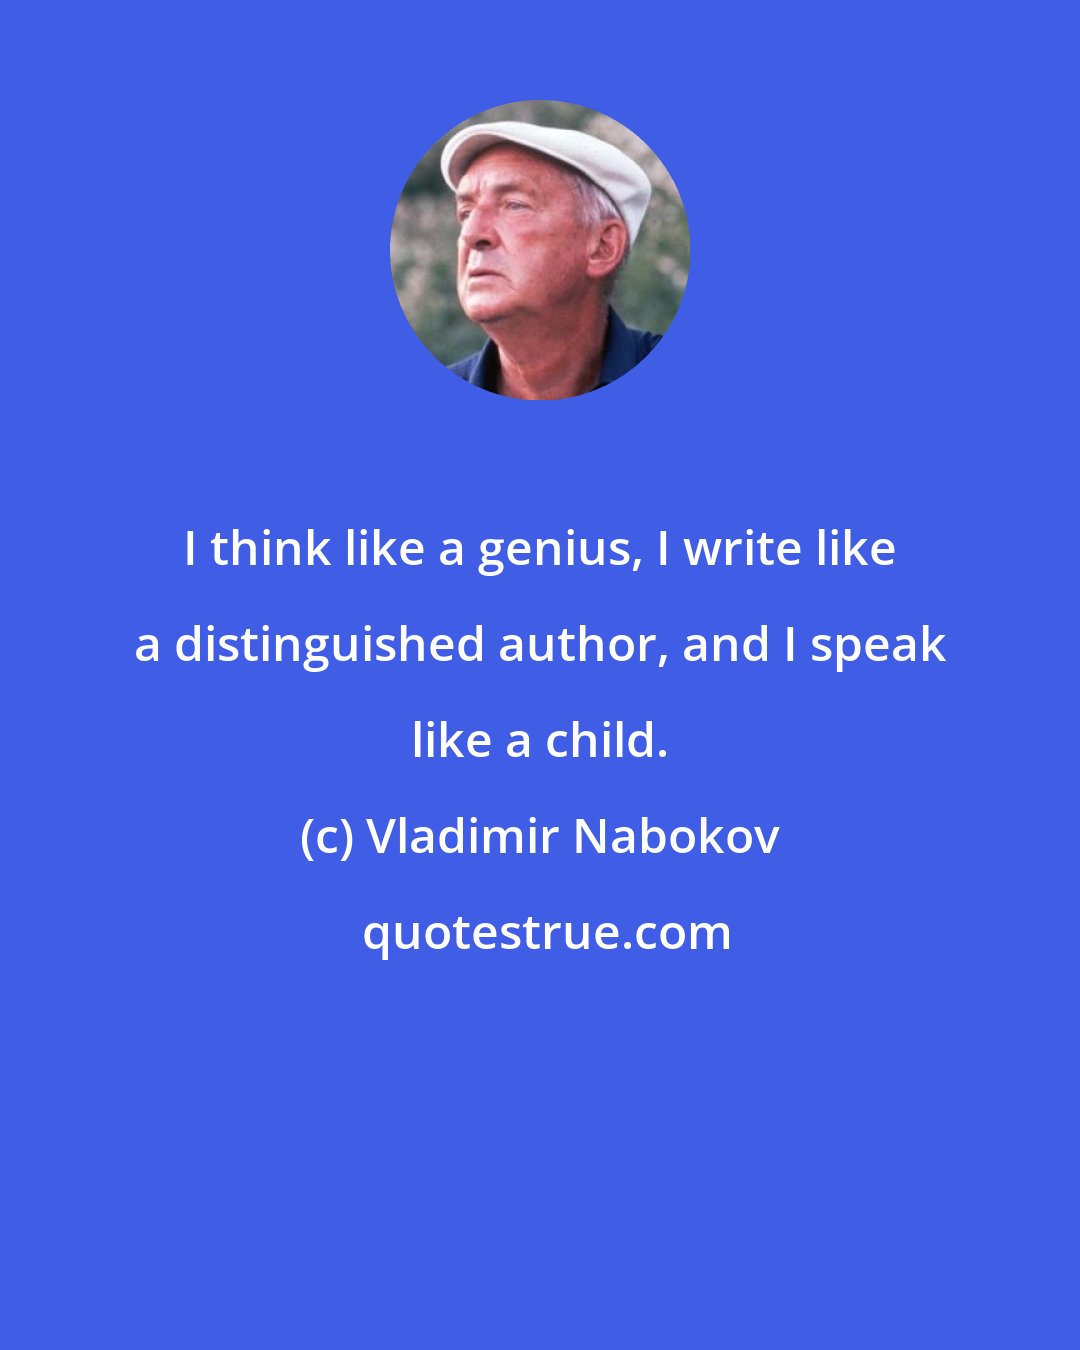 Vladimir Nabokov: I think like a genius, I write like a distinguished author, and I speak like a child.